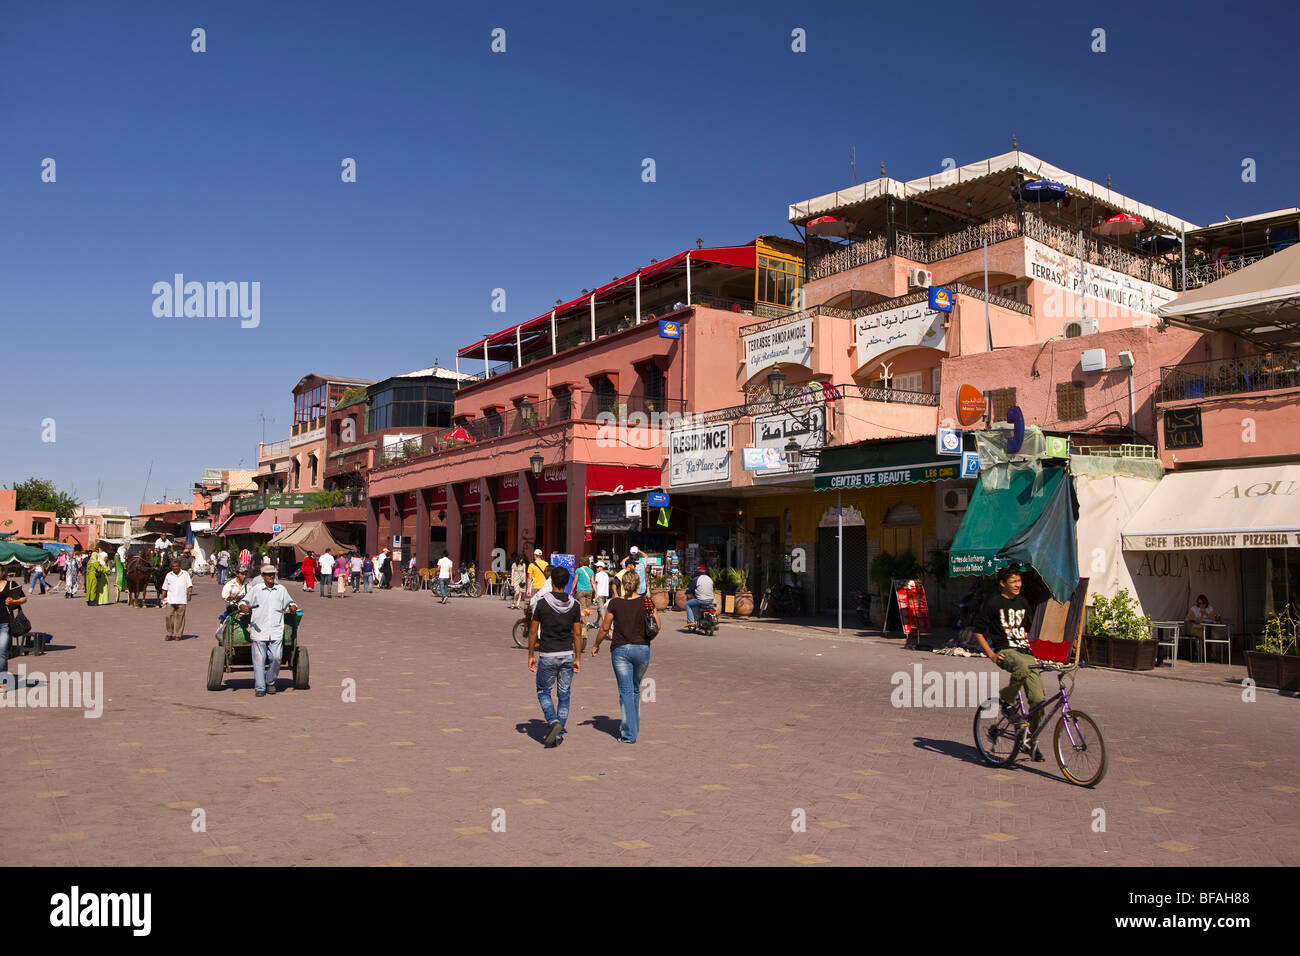 Marrakech, Marocco - Djemaa el Fna piazza principale nella medina. Foto Stock